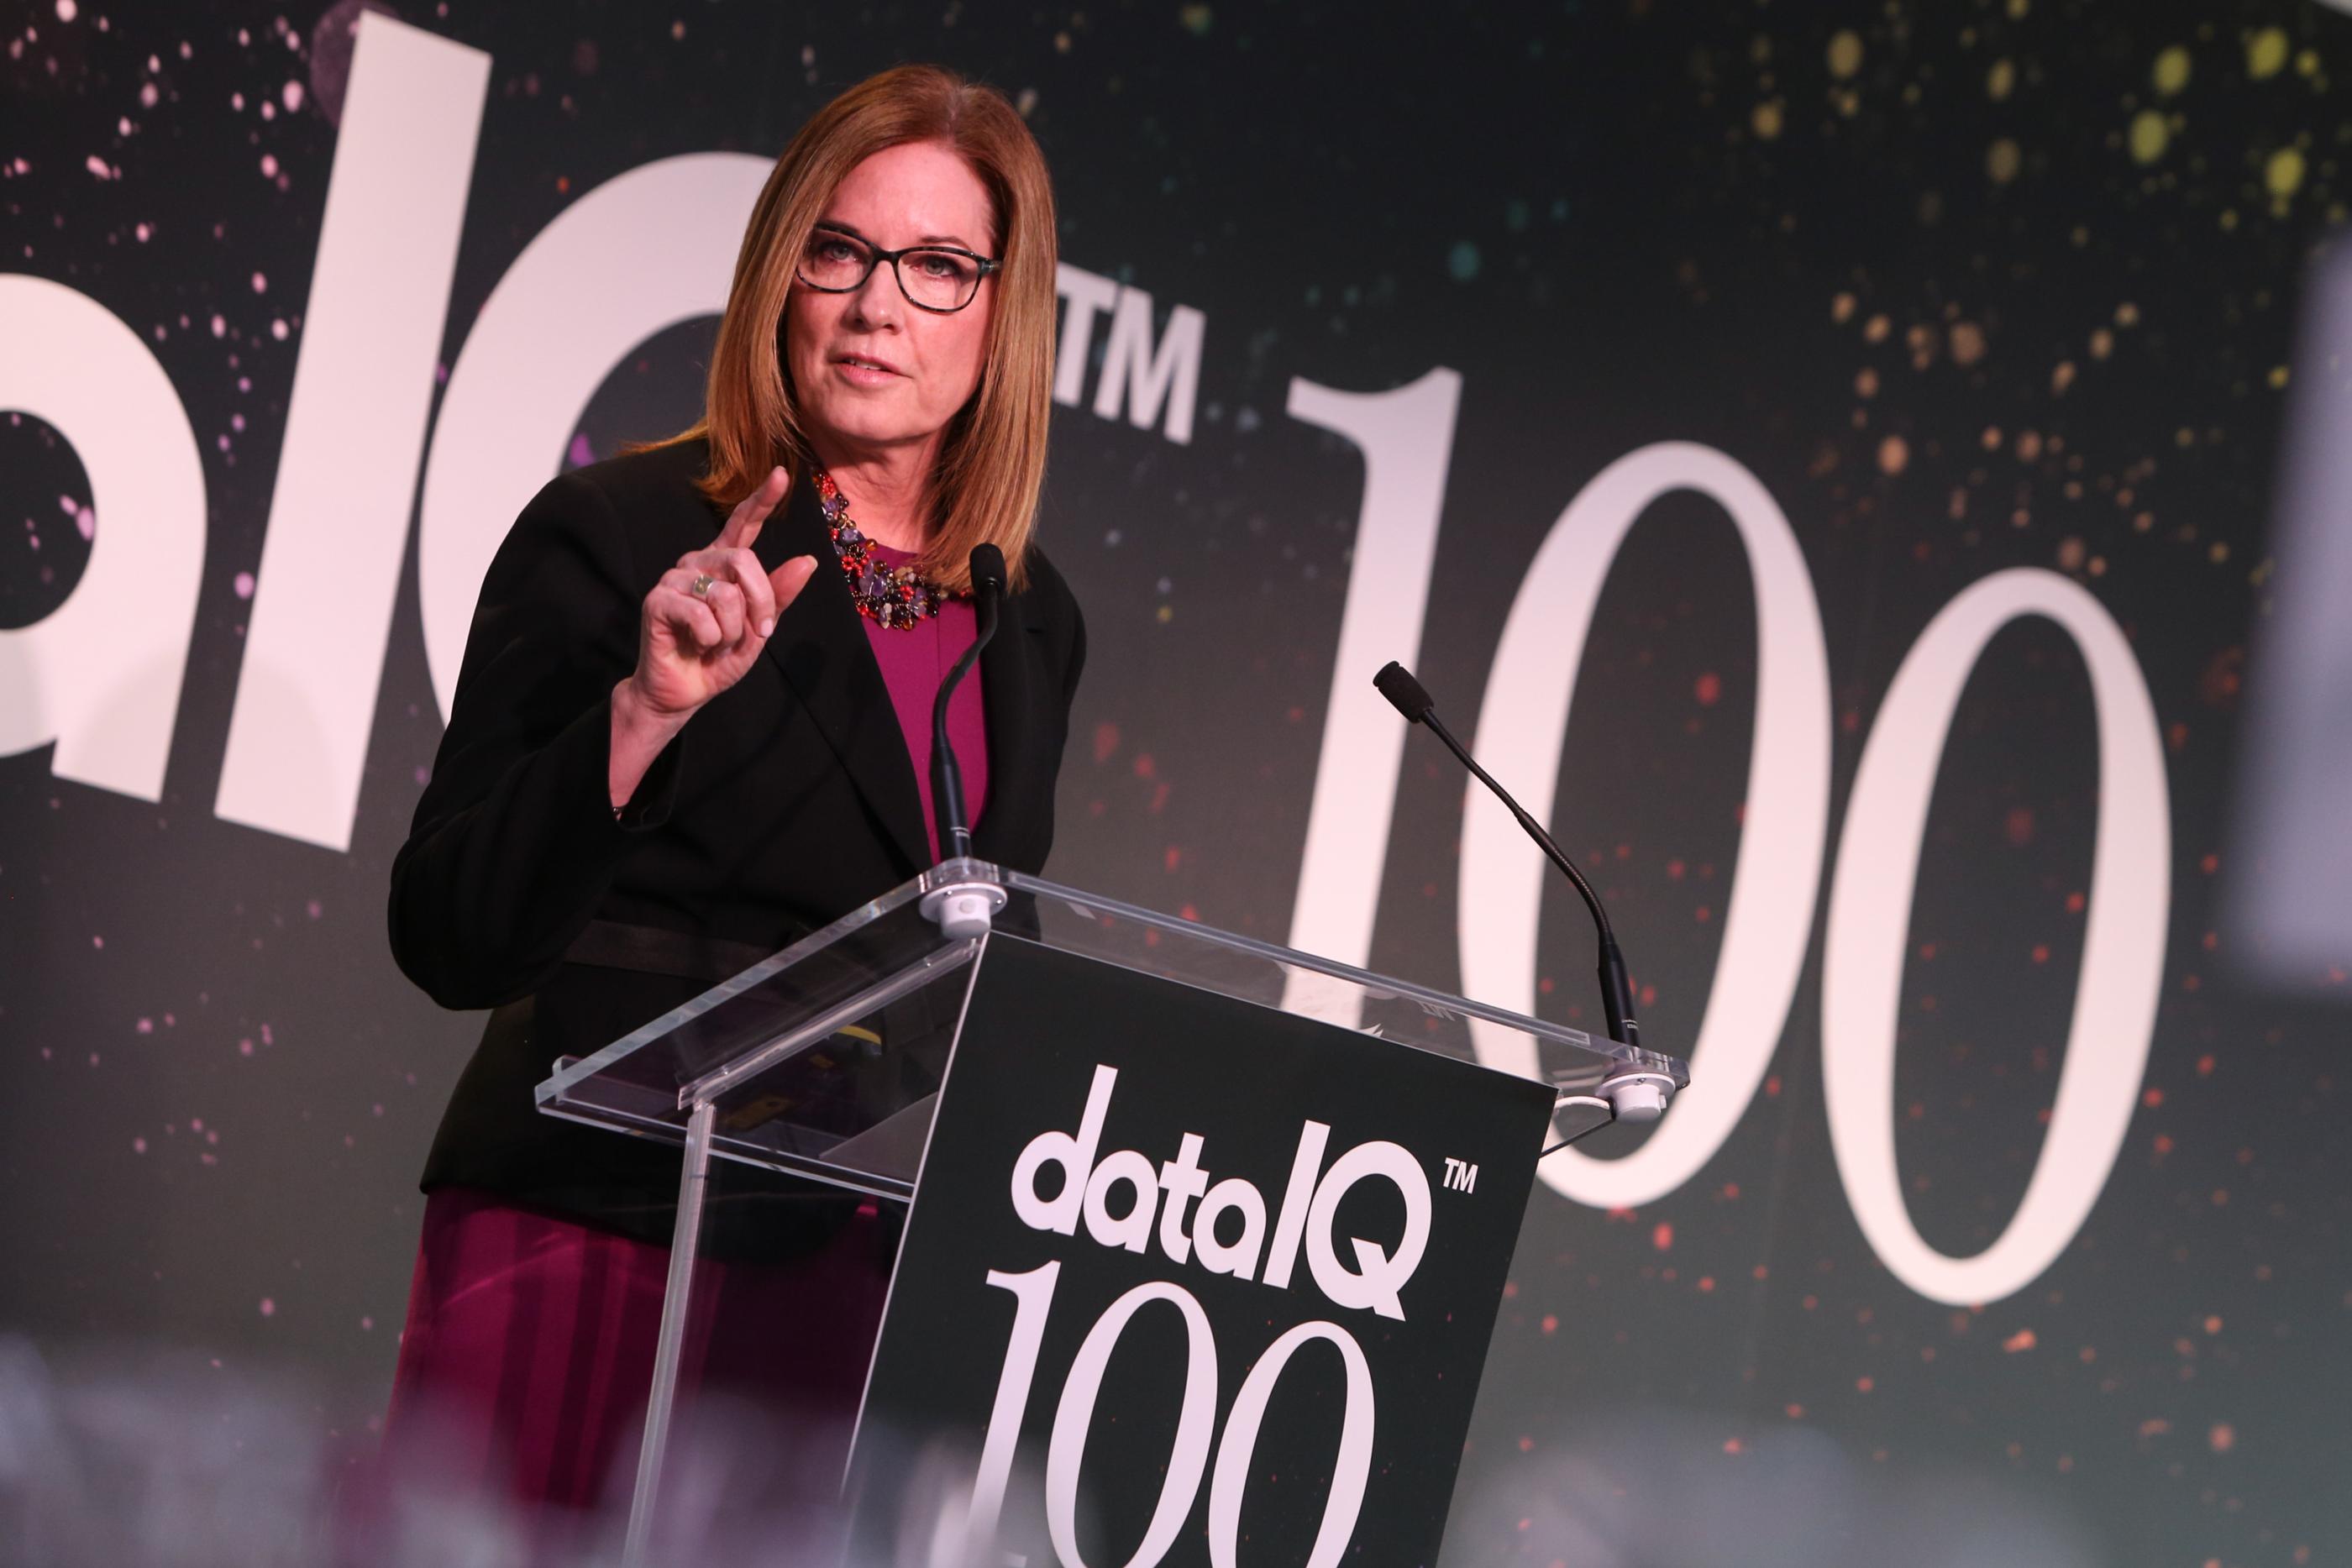 Elizabeth Denham at DataIQ 100 2019